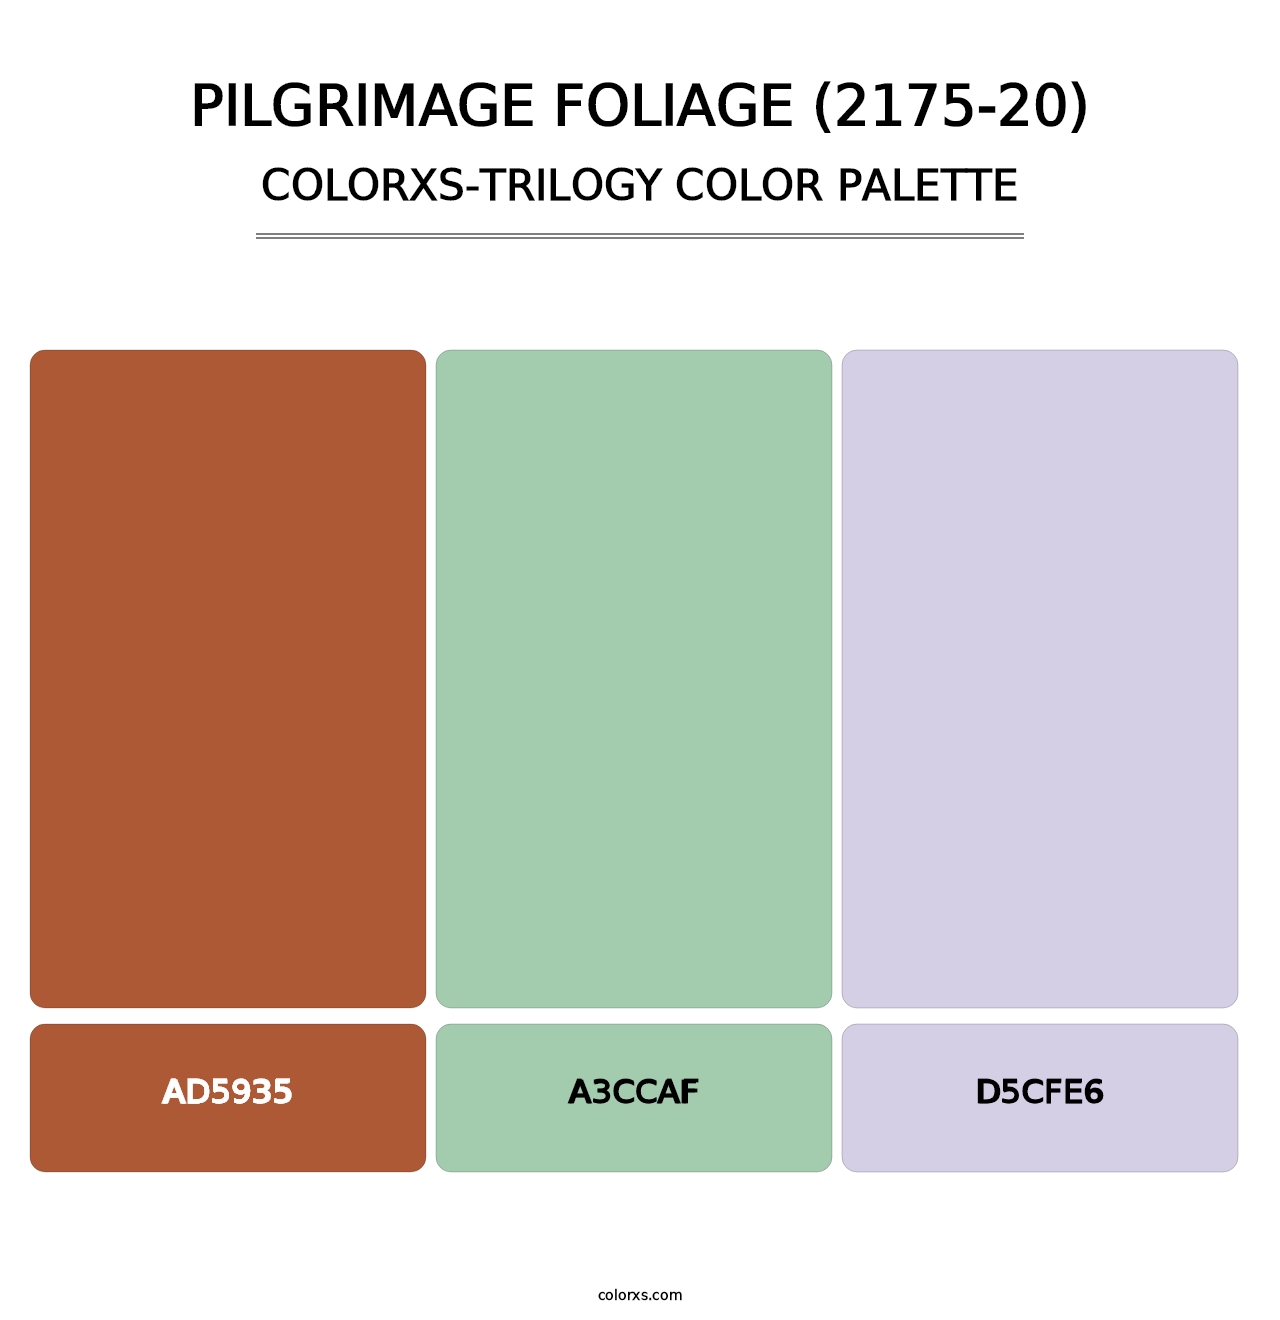 Pilgrimage Foliage (2175-20) - Colorxs Trilogy Palette